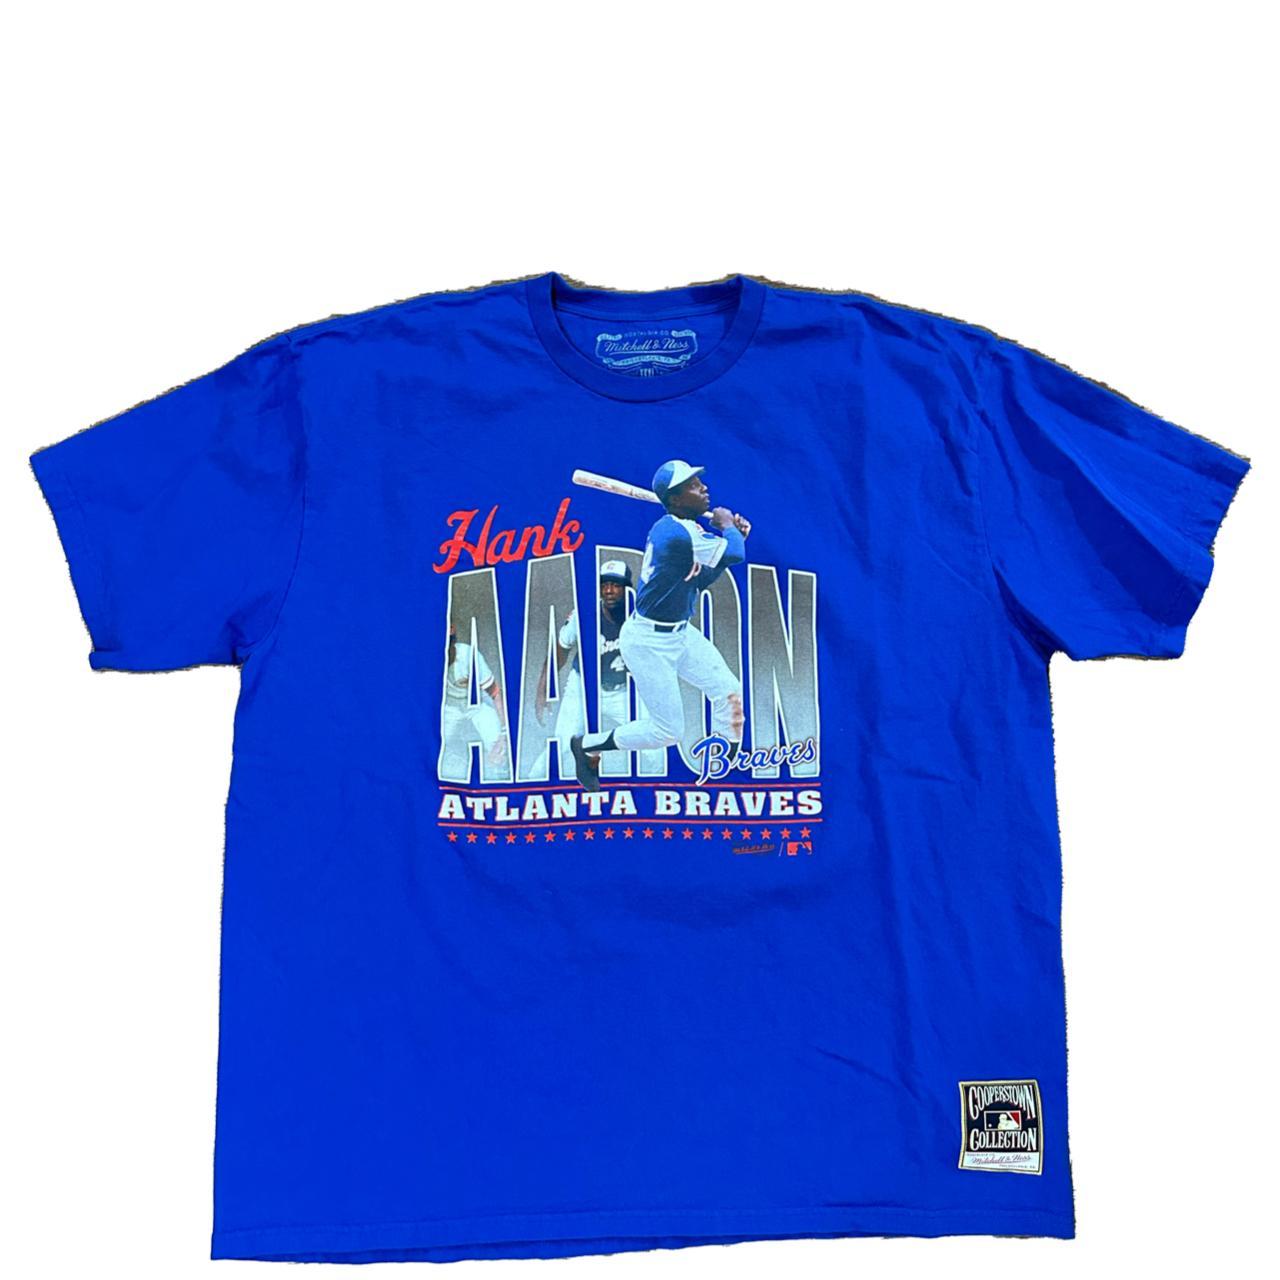 Atlanta Braves Tee-Shirt Hank Aaron Cooperstown - Depop